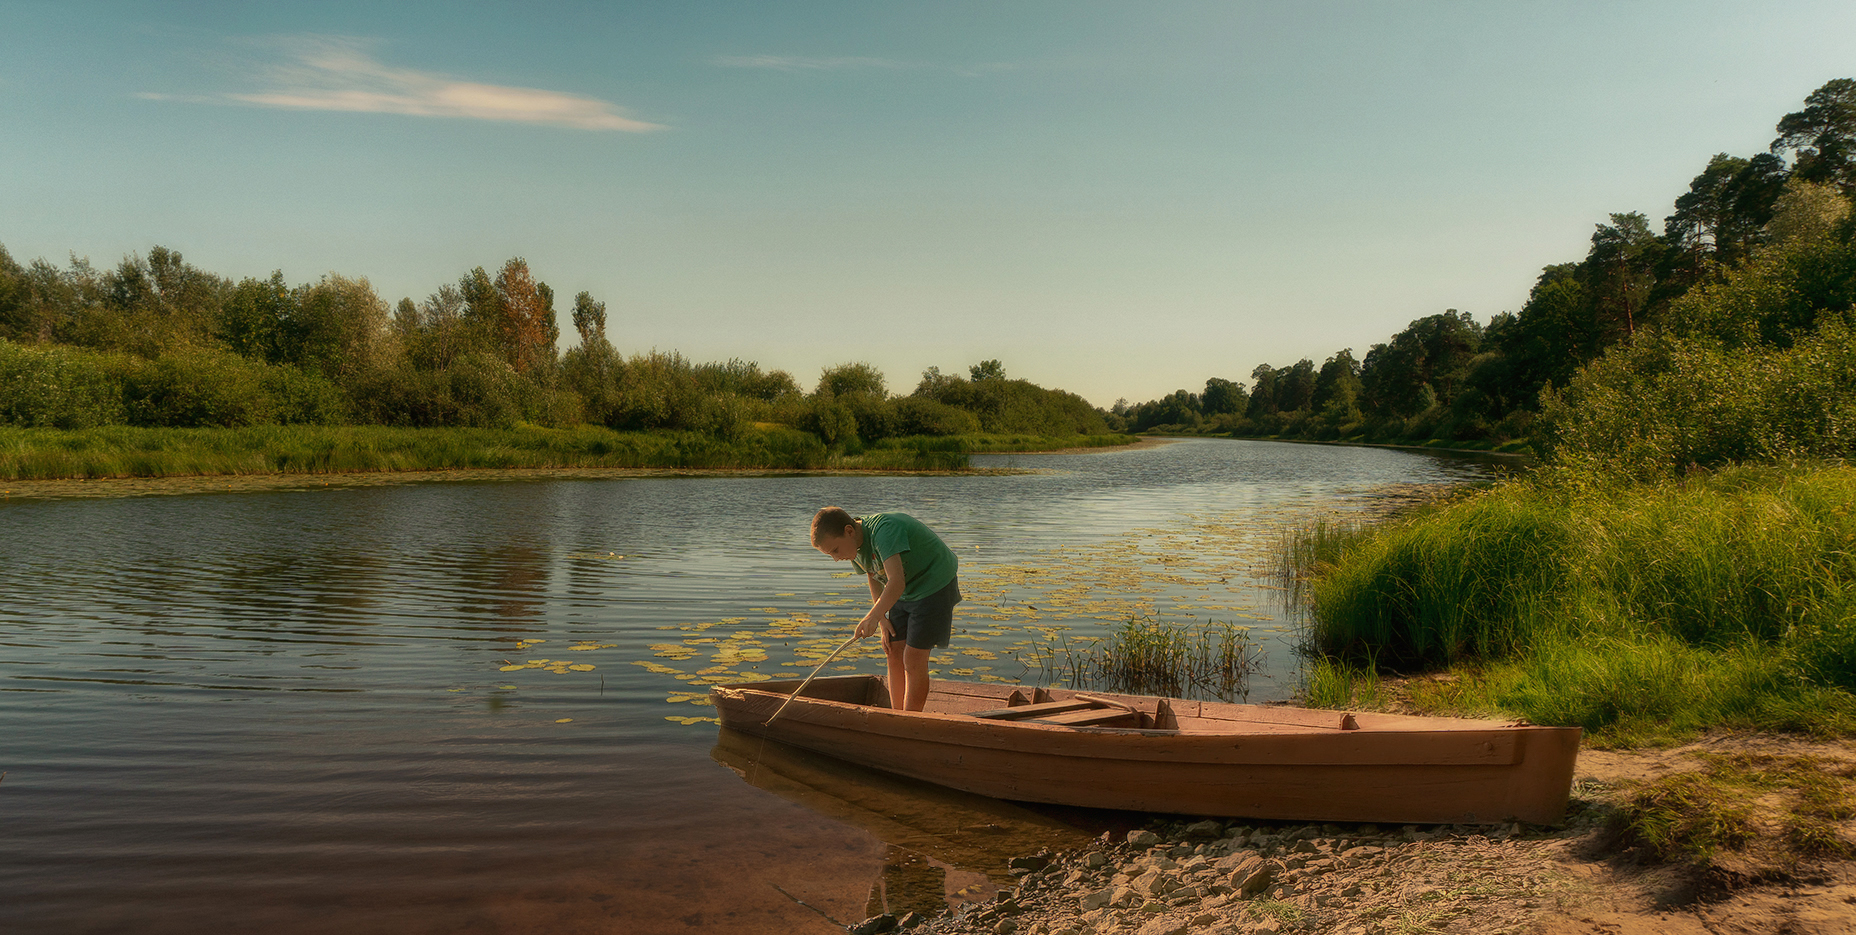 река, лето, лодка, мальчик, пейзаж, вечер, Alexandr Zypin